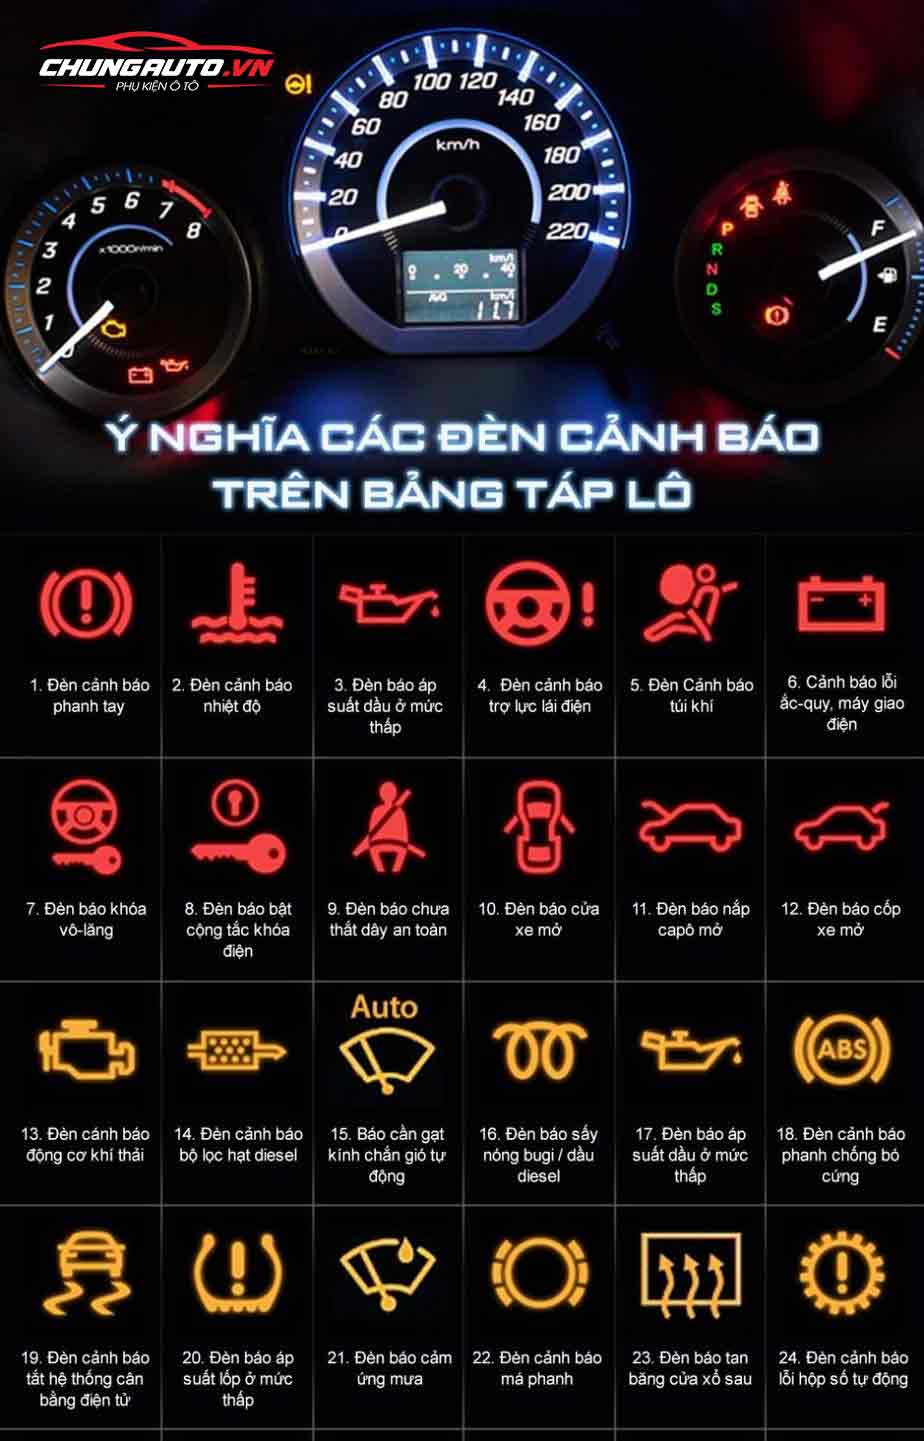 ý nghĩa các loại đèn cảnh báo trên taplo ô tô 